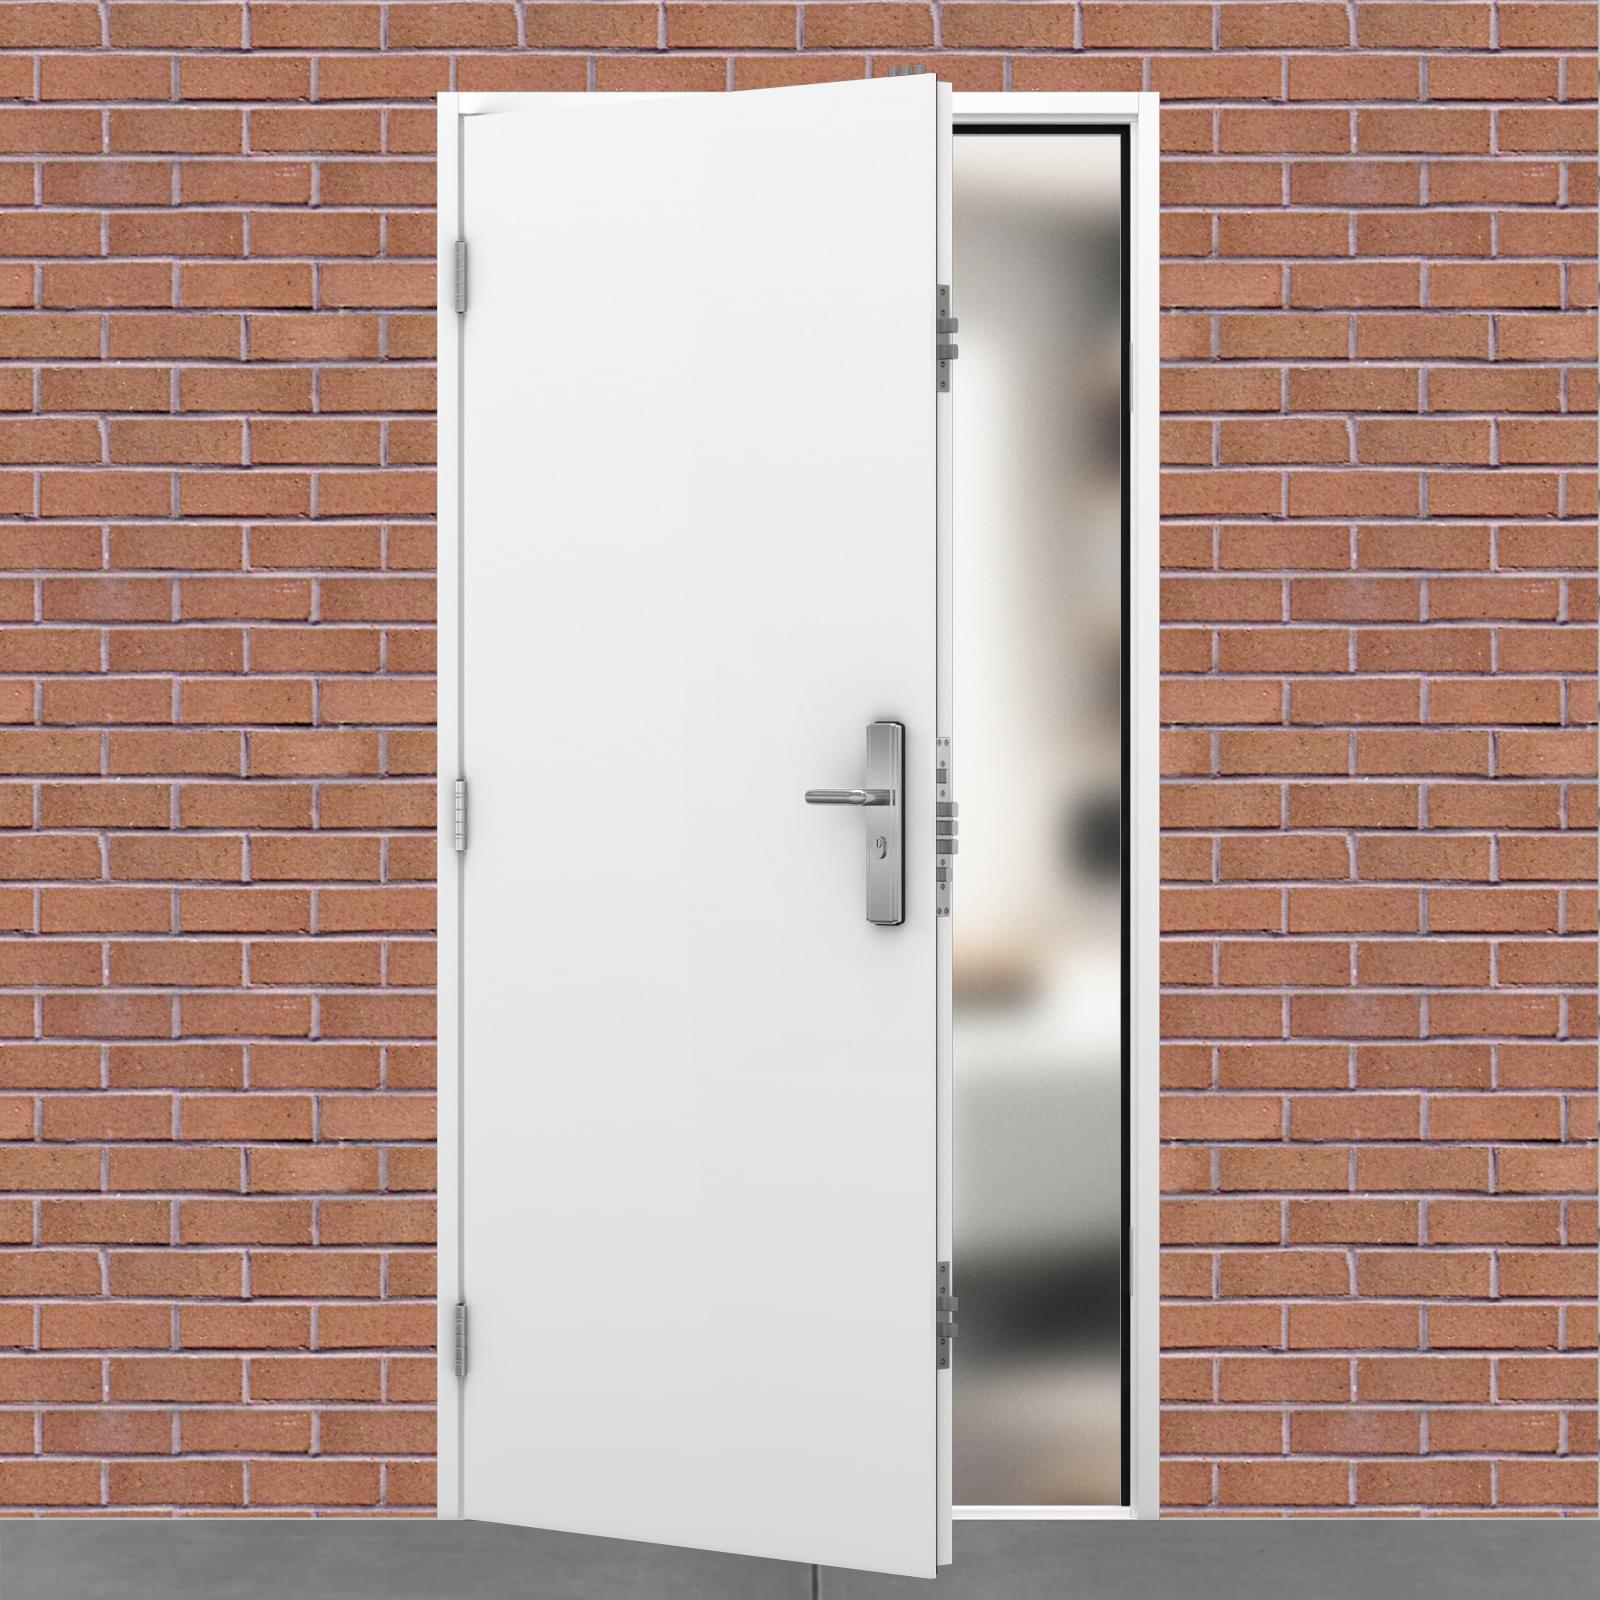 Personal Access Door - Latham's Security Doors